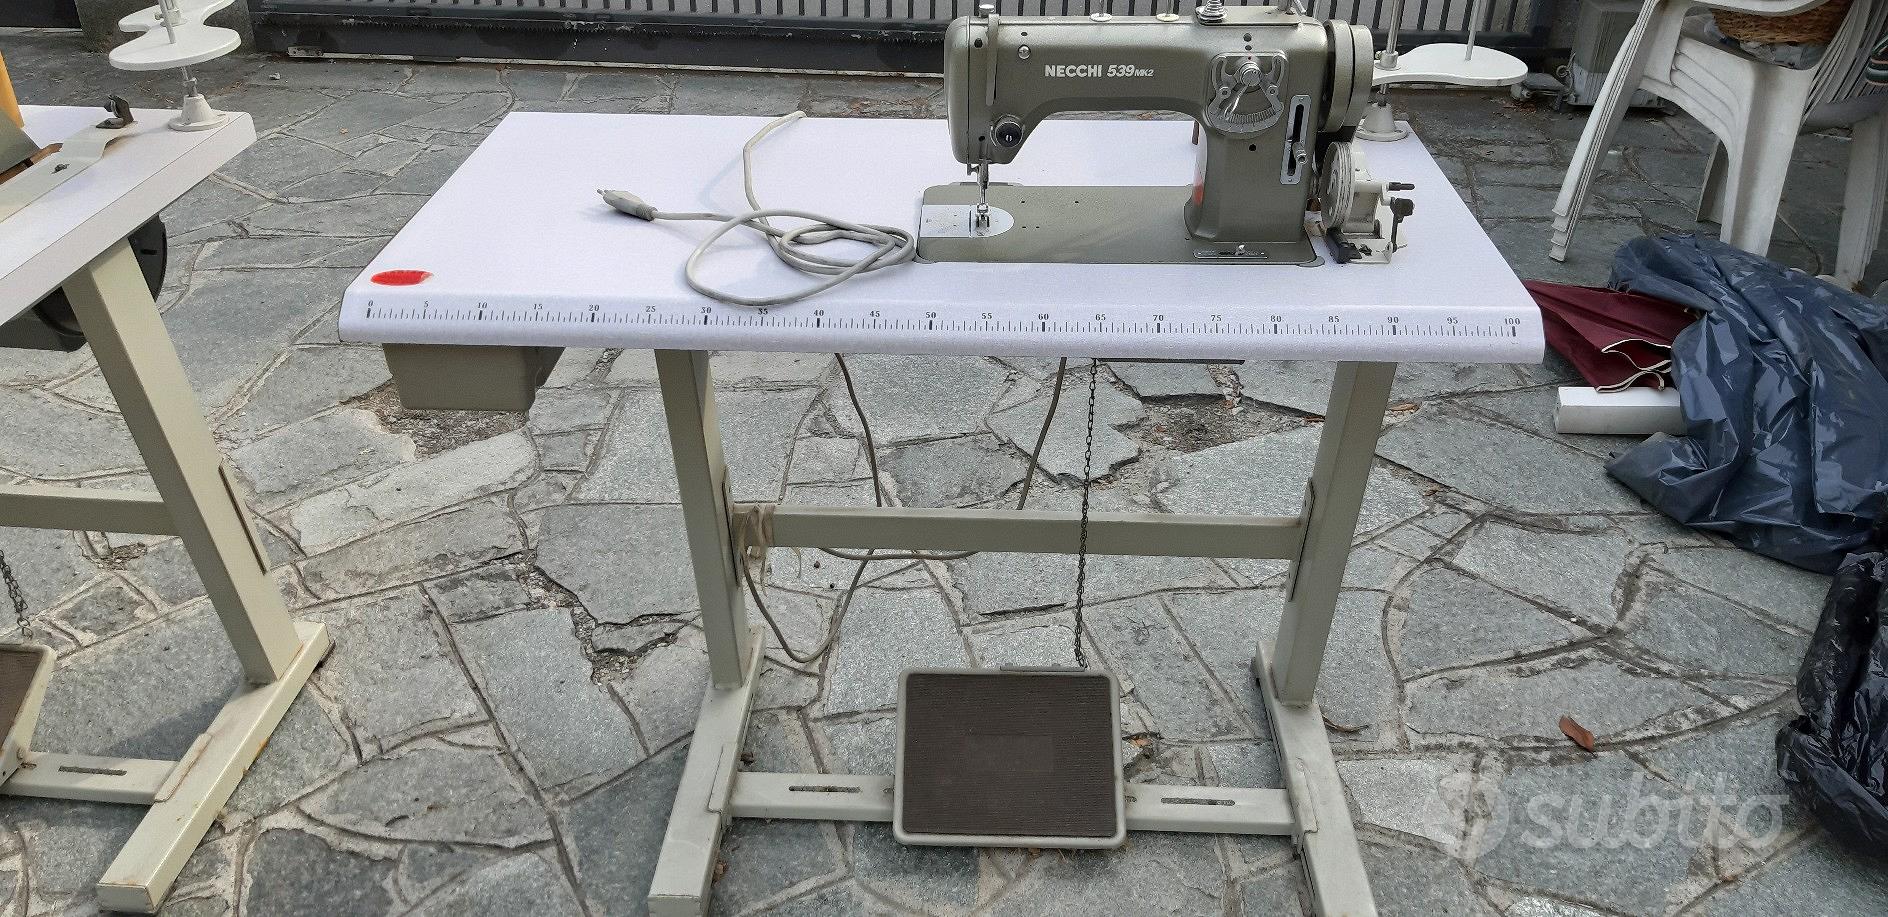 macchina da cucire professionale necchi 539 mk2 - Elettrodomestici